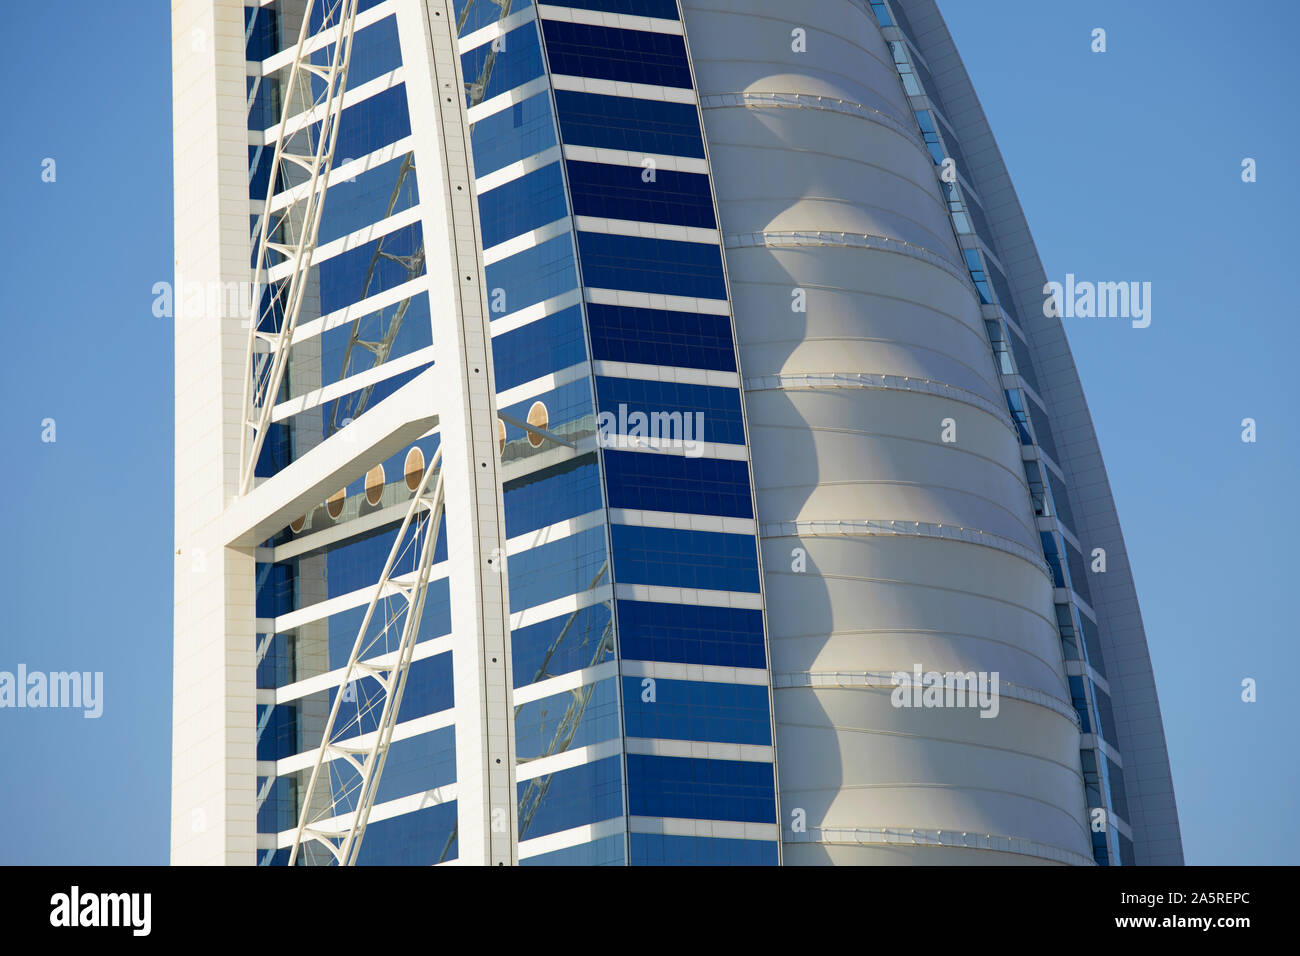 Dettaglio del Burj Al Arab hotel alla spiaggia di Jumeirah, Dubai, Emirati Arabi Uniti Foto Stock